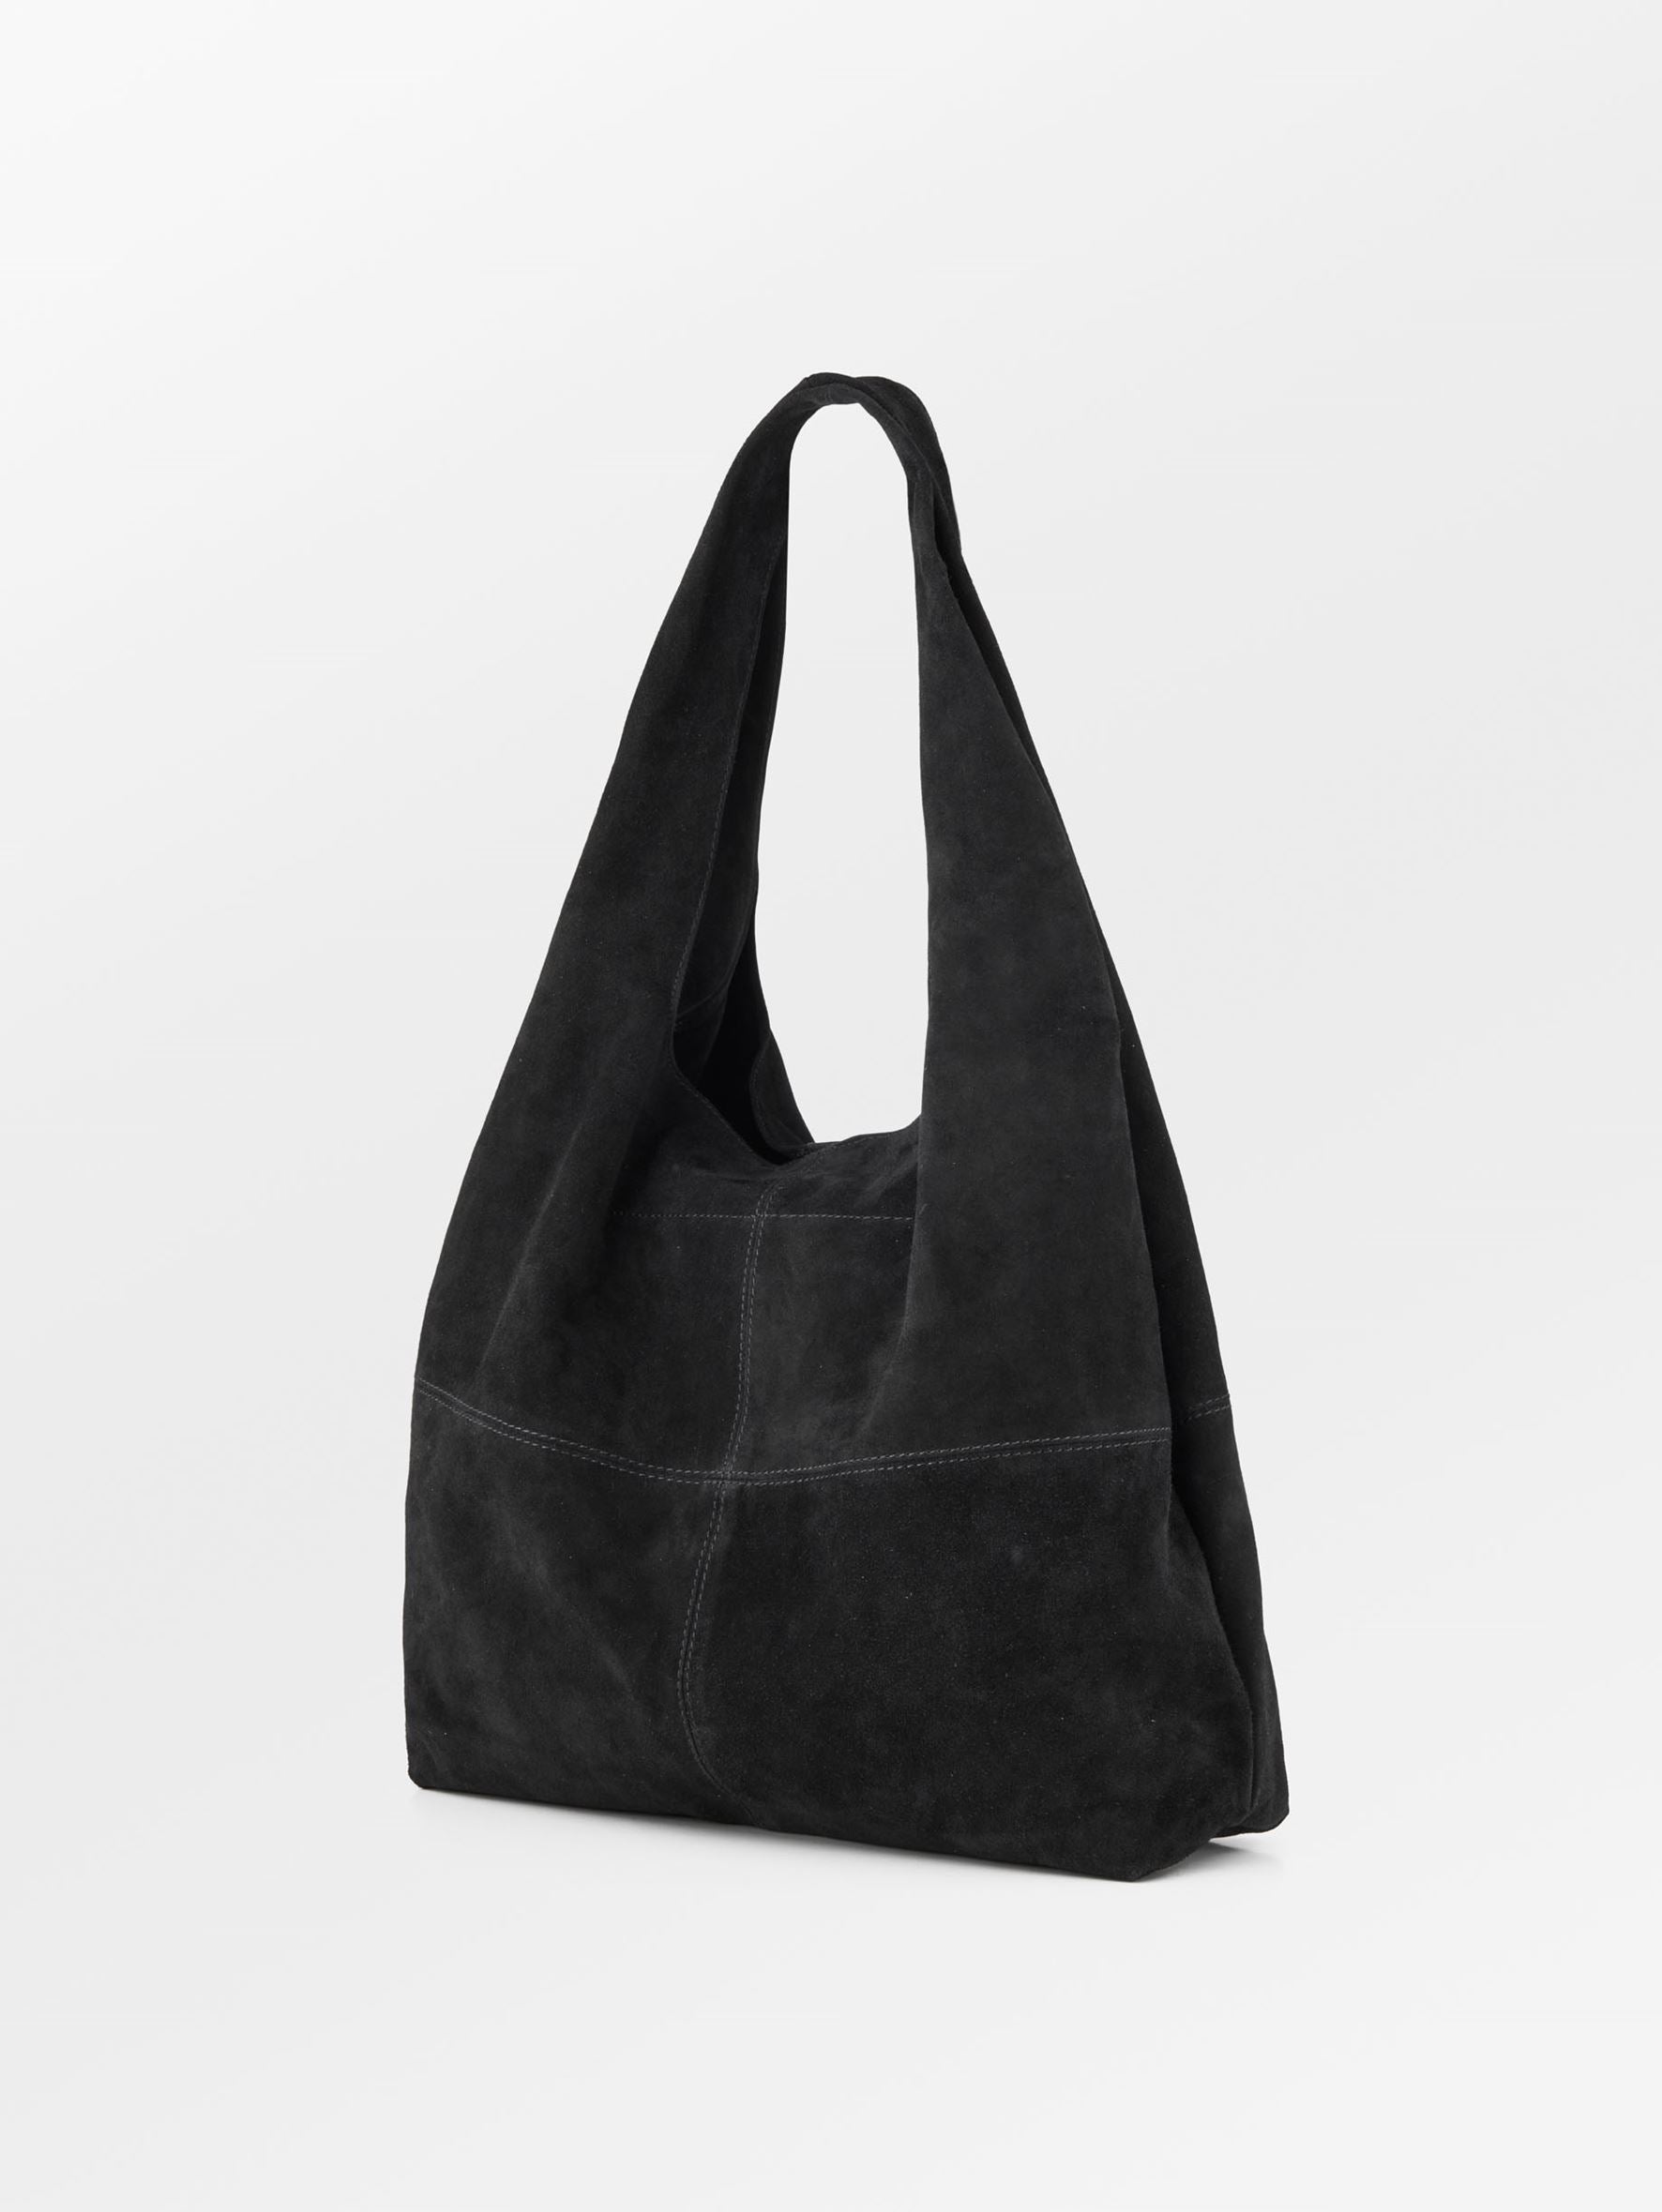 Becksöndergaard, Suede Dalliea Bag - Black, bags, bags, gifts, bags